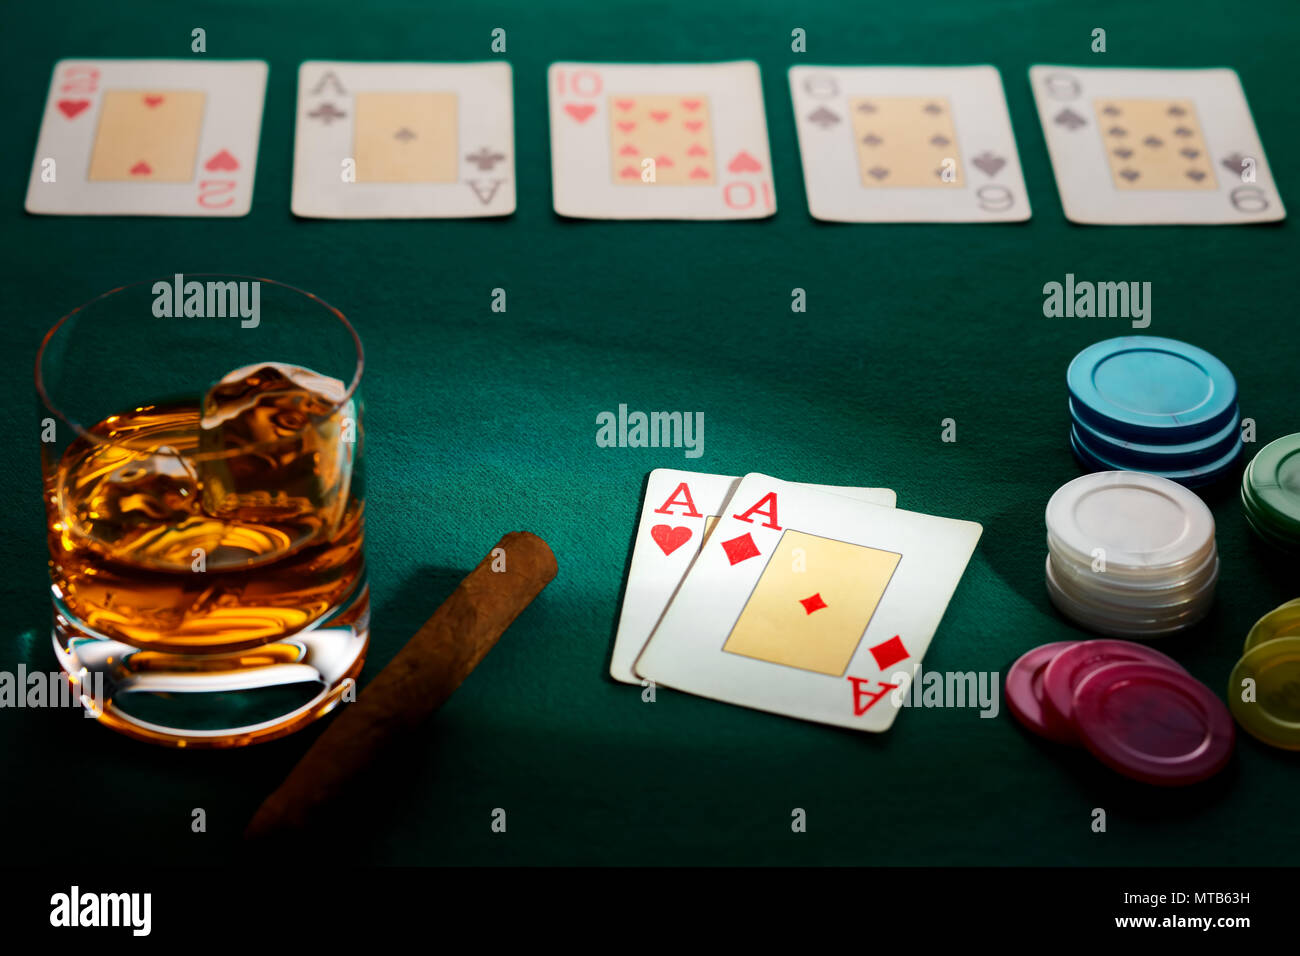 Texas Hold'em poker con una mano de dos ases, papitas, cigarros y un vaso de whisky con paño fino de color verde. Ganó por tres ases. Foto de stock